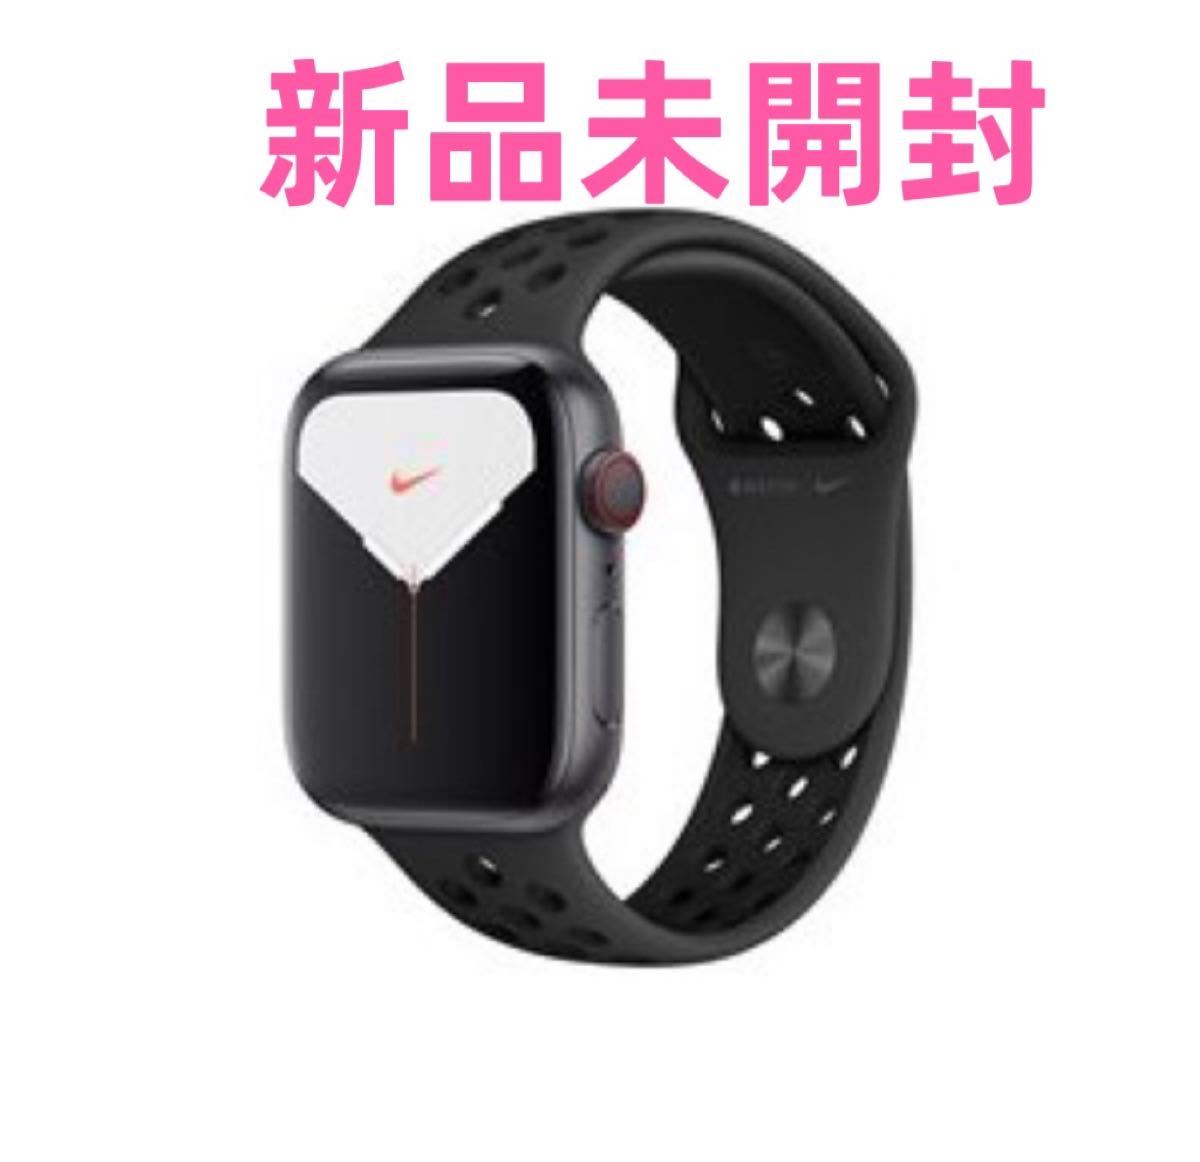 使い勝手の良い】Apple Watch Nike Series 5 GPS+Cellularモデル 44mm MX3F2J/A スマートウォッチ本体  スマートウォッチ、ウェアラブル端末 スマホ、タブレット、パソコン￥27,856-www.urubovillage.com